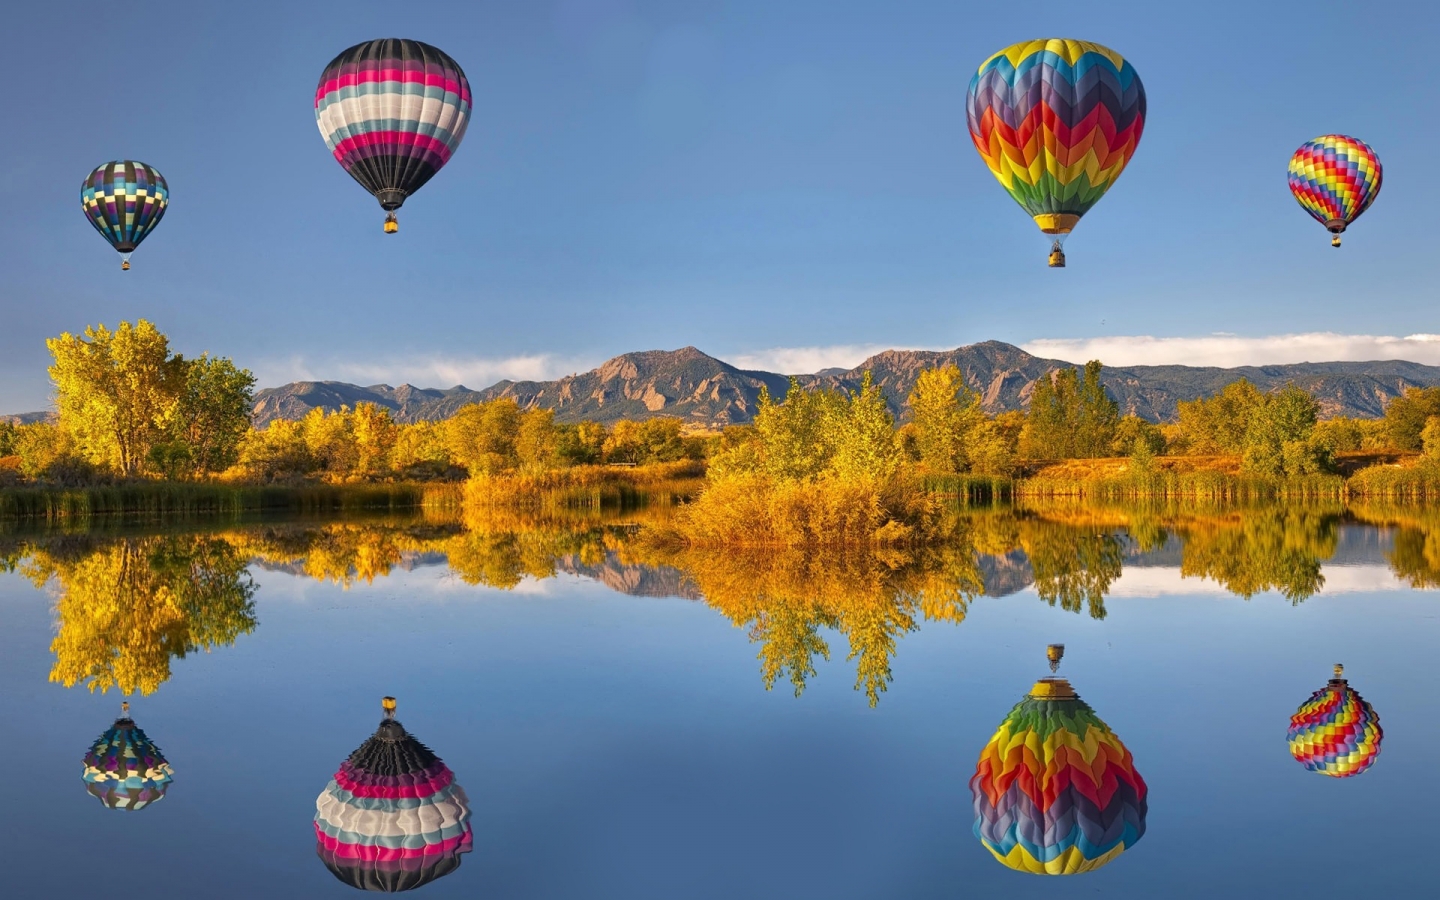 Ballon Race for 1440 x 900 widescreen resolution